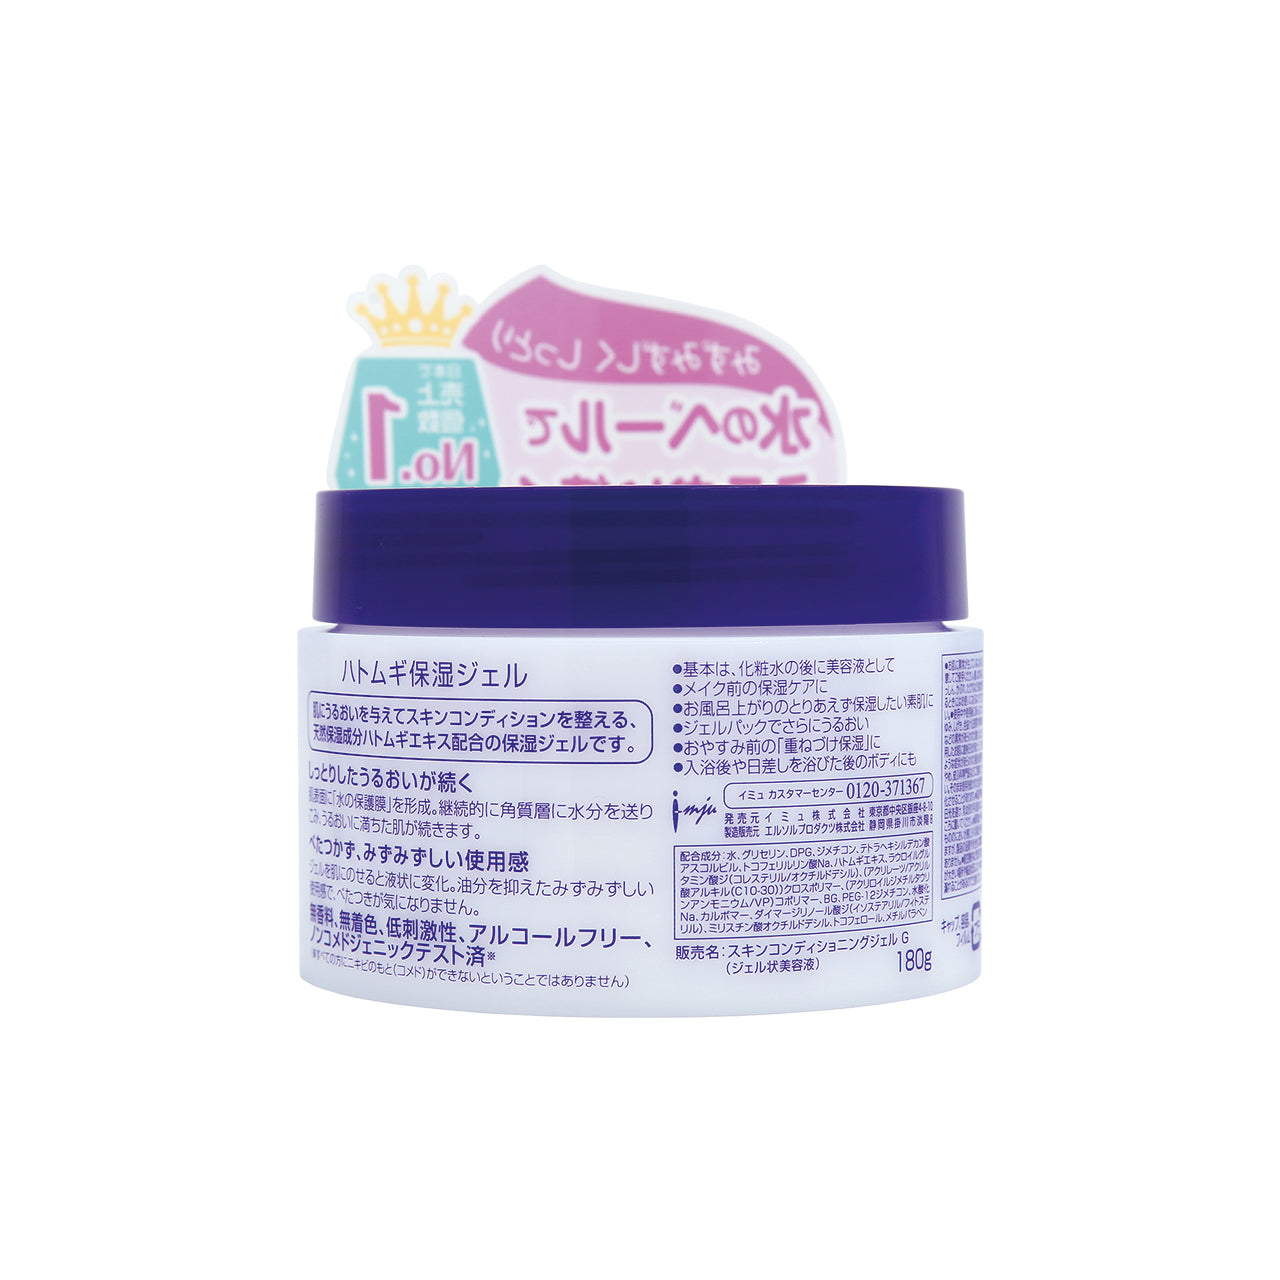 Hatomugi Skin Conditioning Gel Special Set 2pcs | Sasa Global eShop